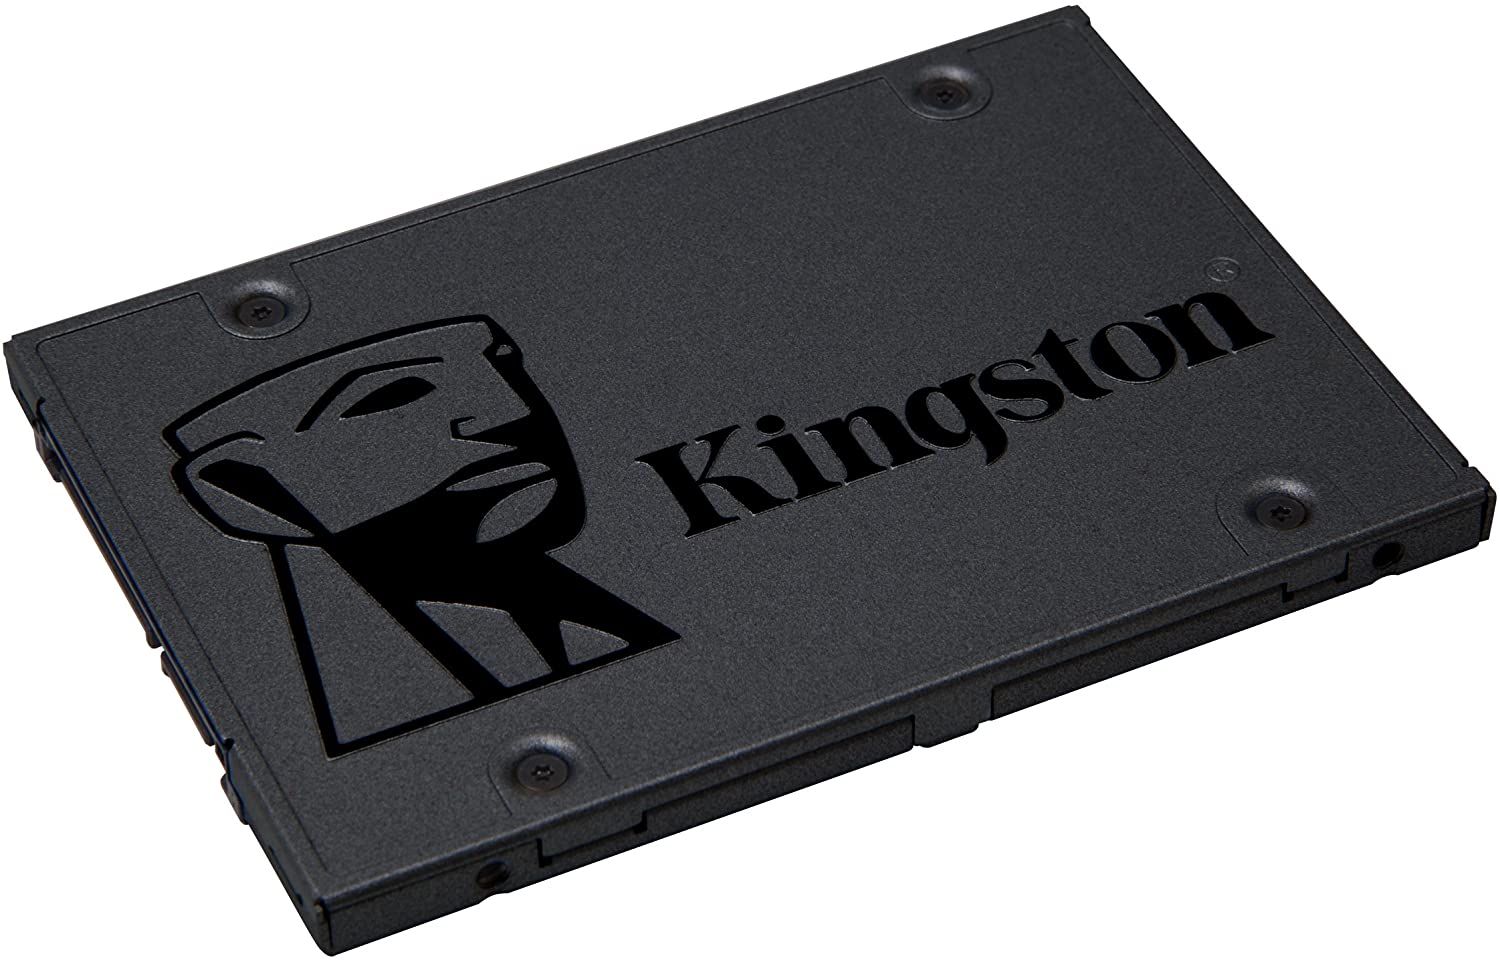 Bild zu 480GB Kingston A400 SSD Interne SSD 2.5 Zoll SATA Rev 3.0 für 35,49€ (Vergleich: 41,97€)